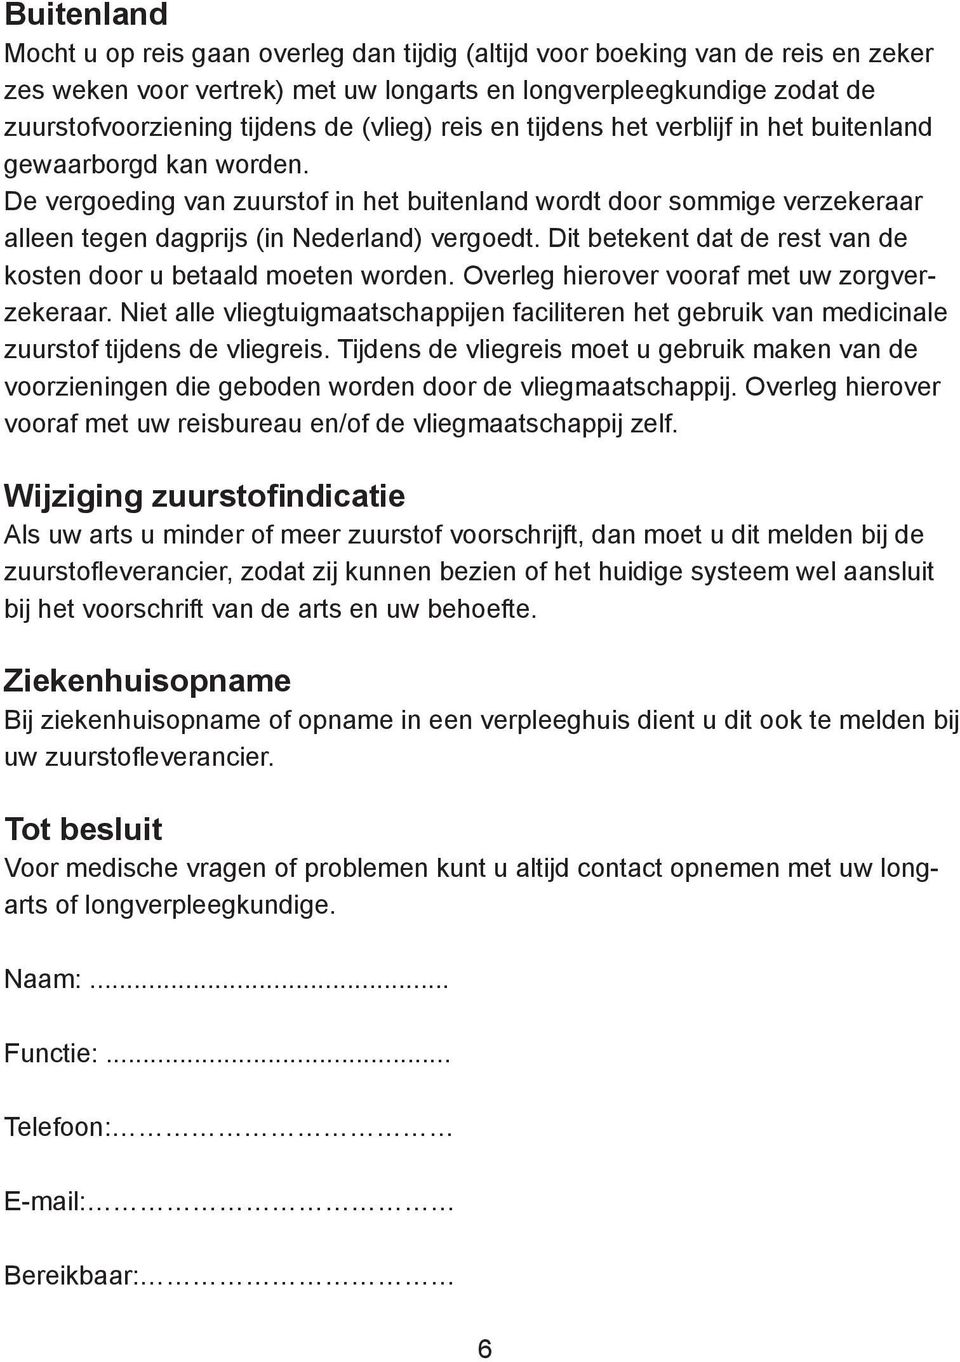 De vergoeding van zuurstof in het buitenland wordt door sommige verzekeraar alleen tegen dagprijs (in Nederland) vergoedt. Dit betekent dat de rest van de kosten door u betaald moeten worden.